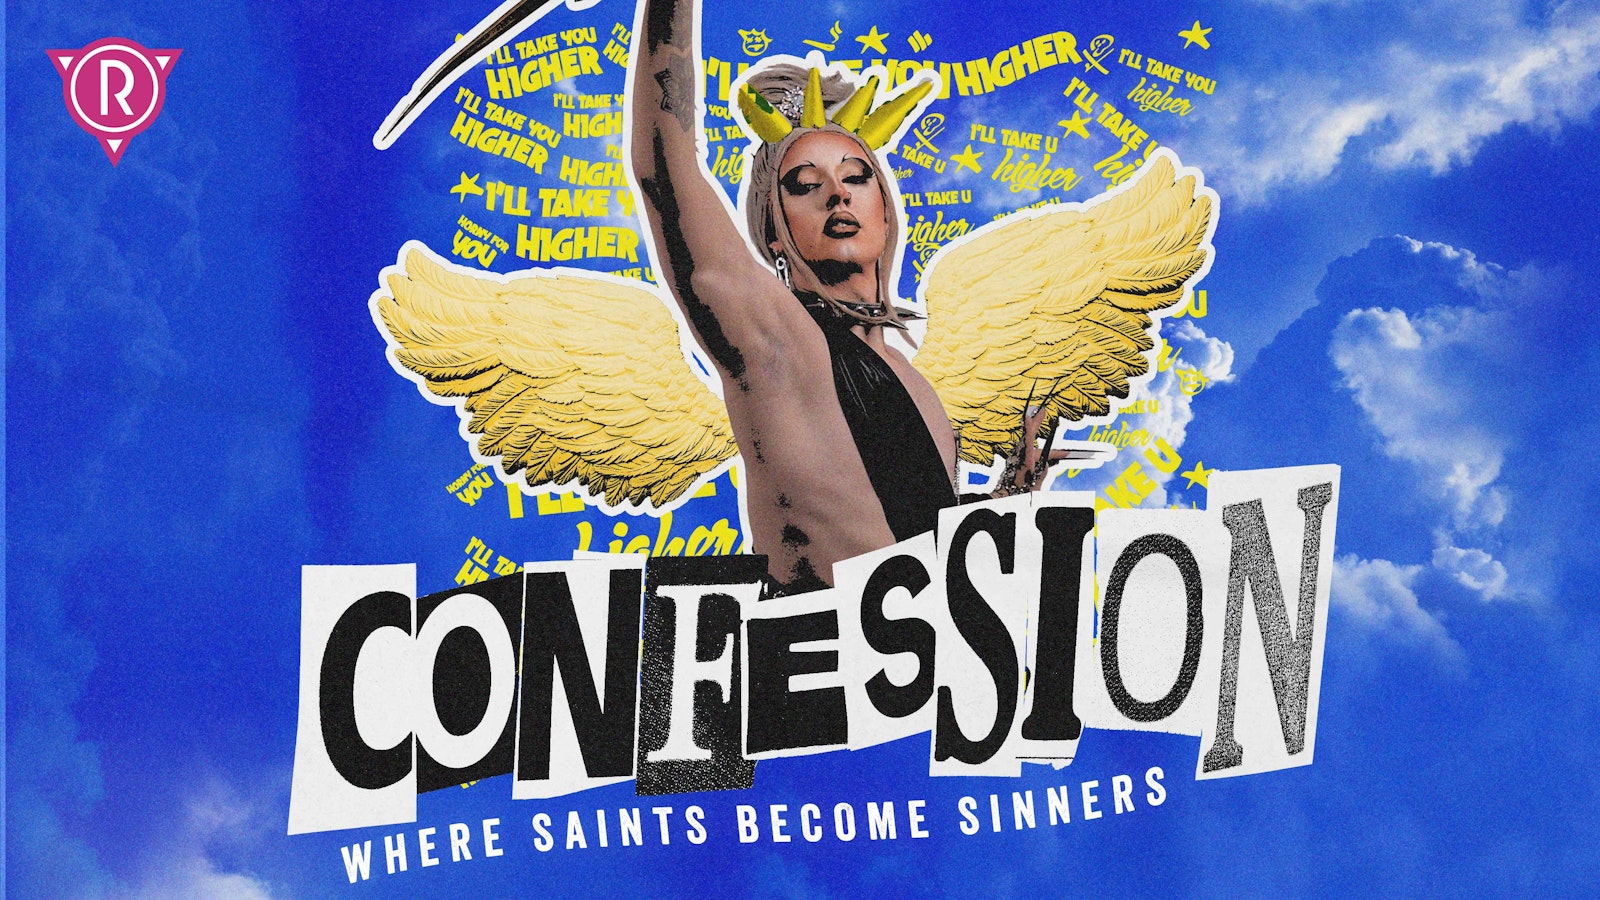 Confession // Altar Saturdays at Club Revenge